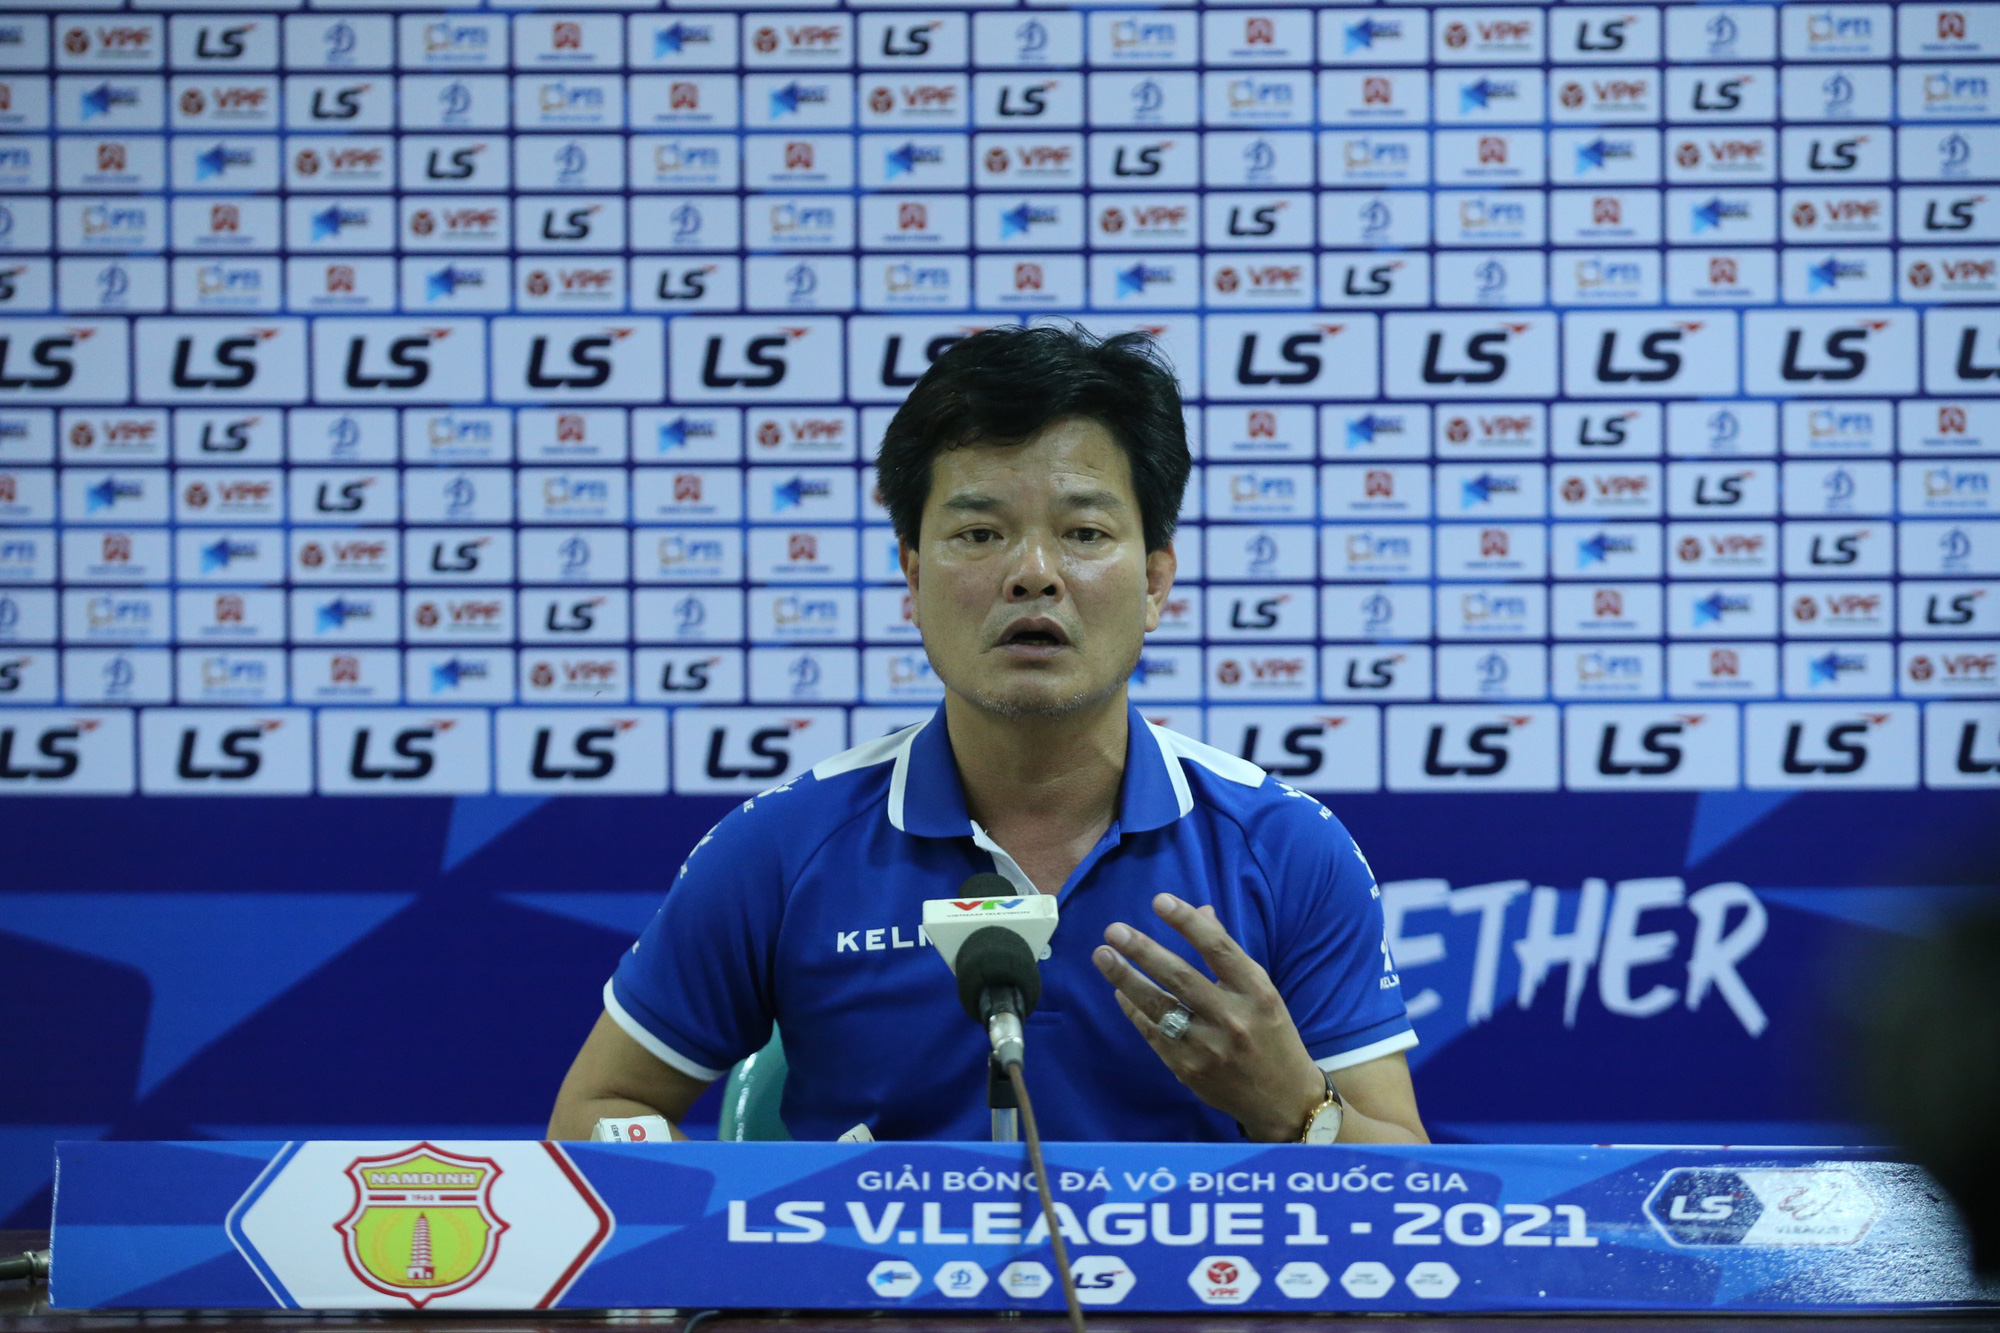 HLV Nguyễn Văn Sỹ (Nam Định) khẳng định hài lòng với tinh thần thi đấu của  các học trò.